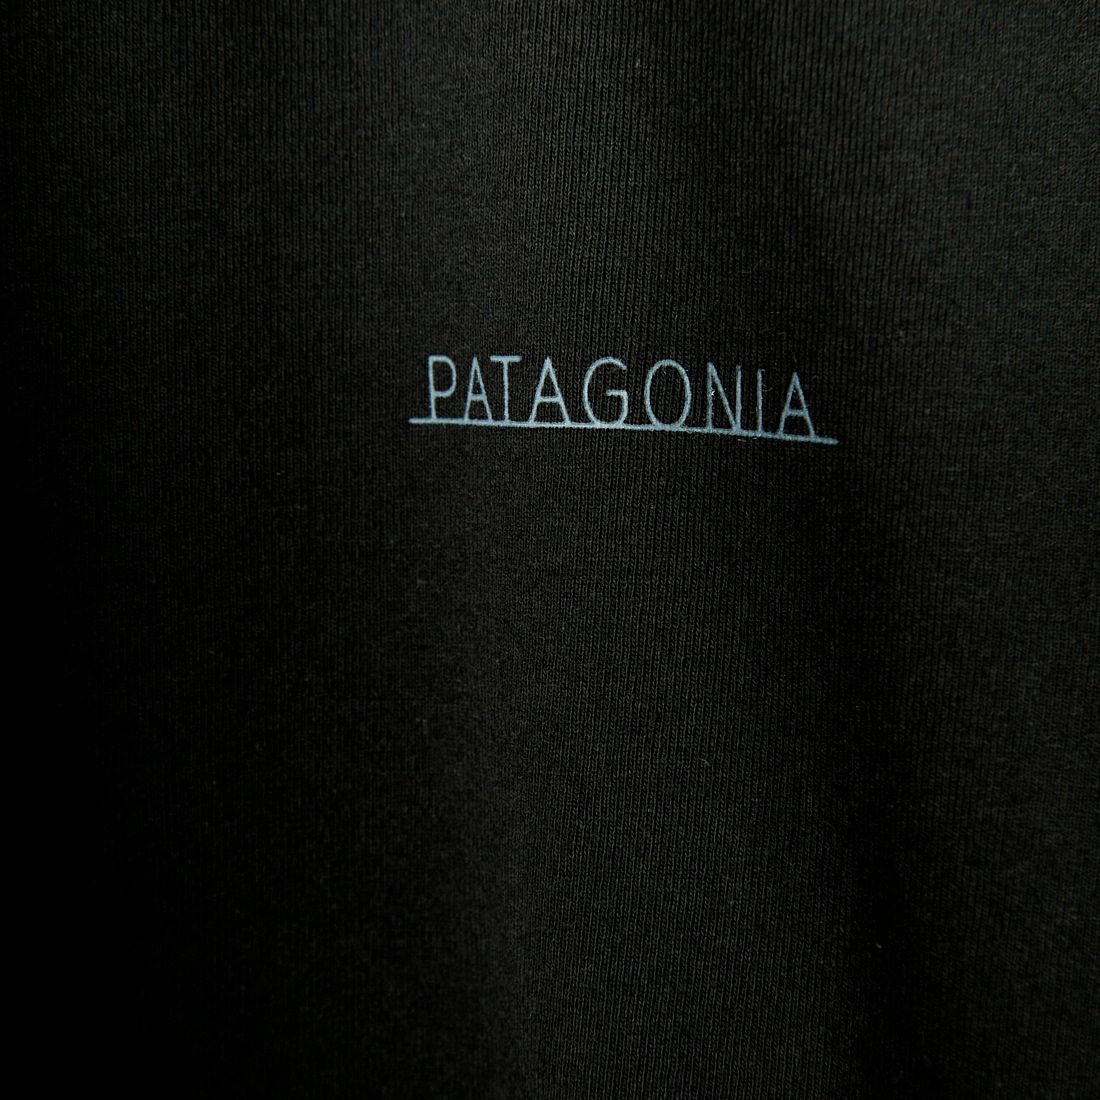 patagonia [パタゴニア] メンズ フォージ マーク レスポンシビリティー [37572] BLK